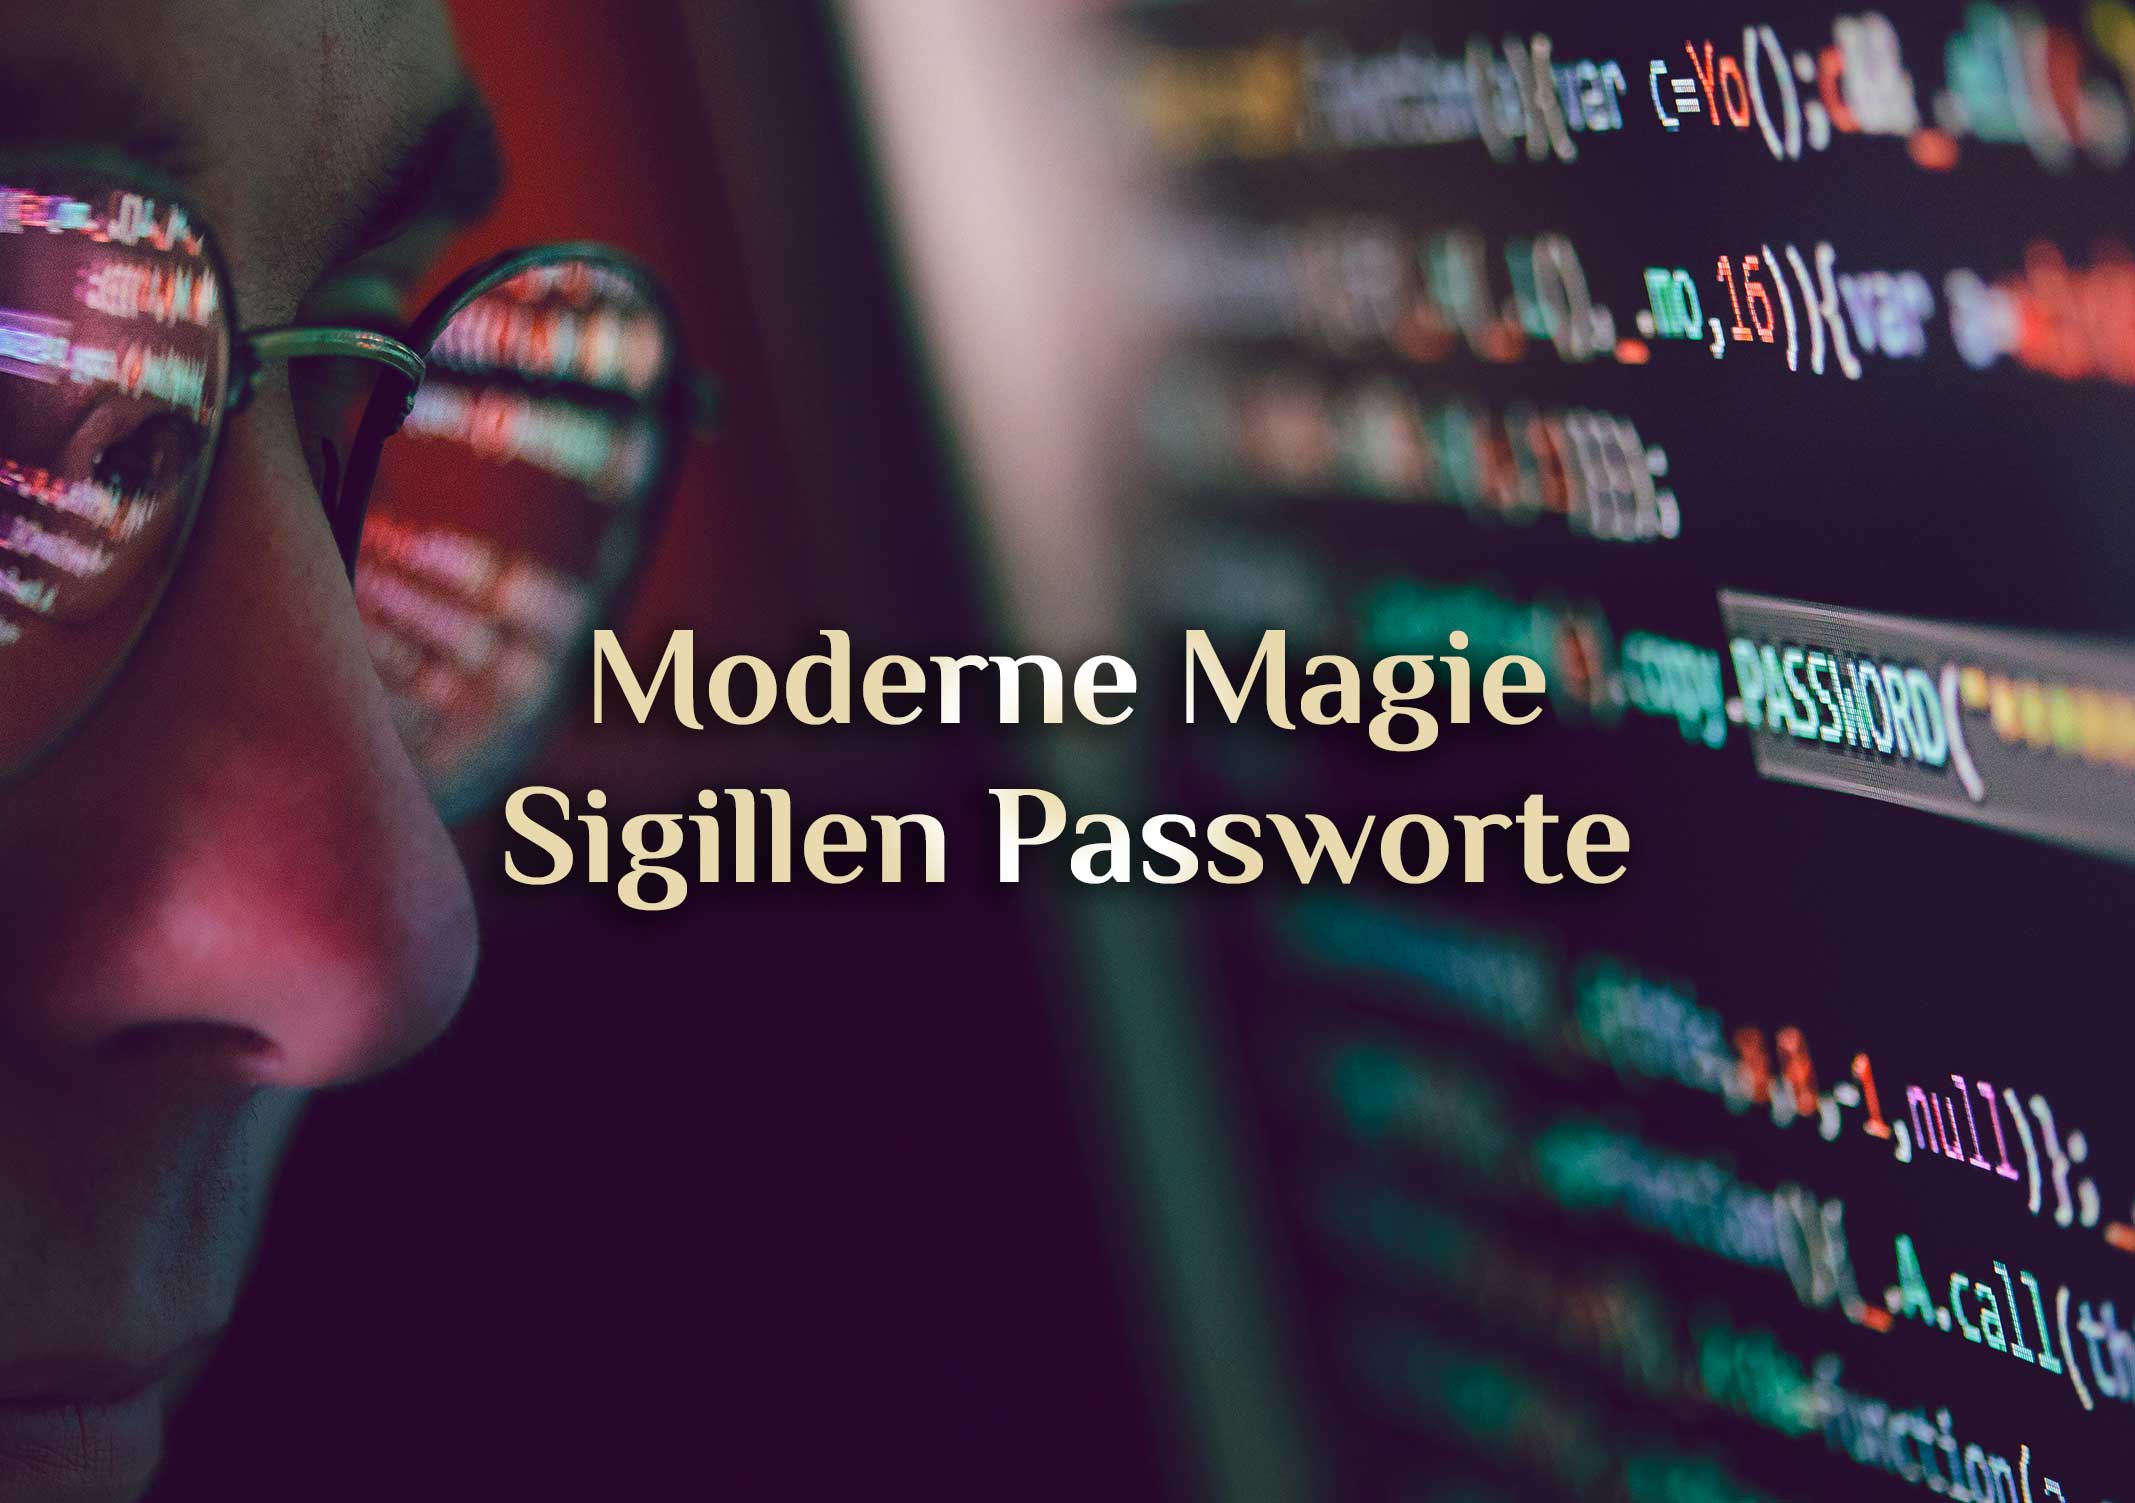 Sigillen Passworte 🗝️ Digitale Hexerei 🗝️ Magische Passworte